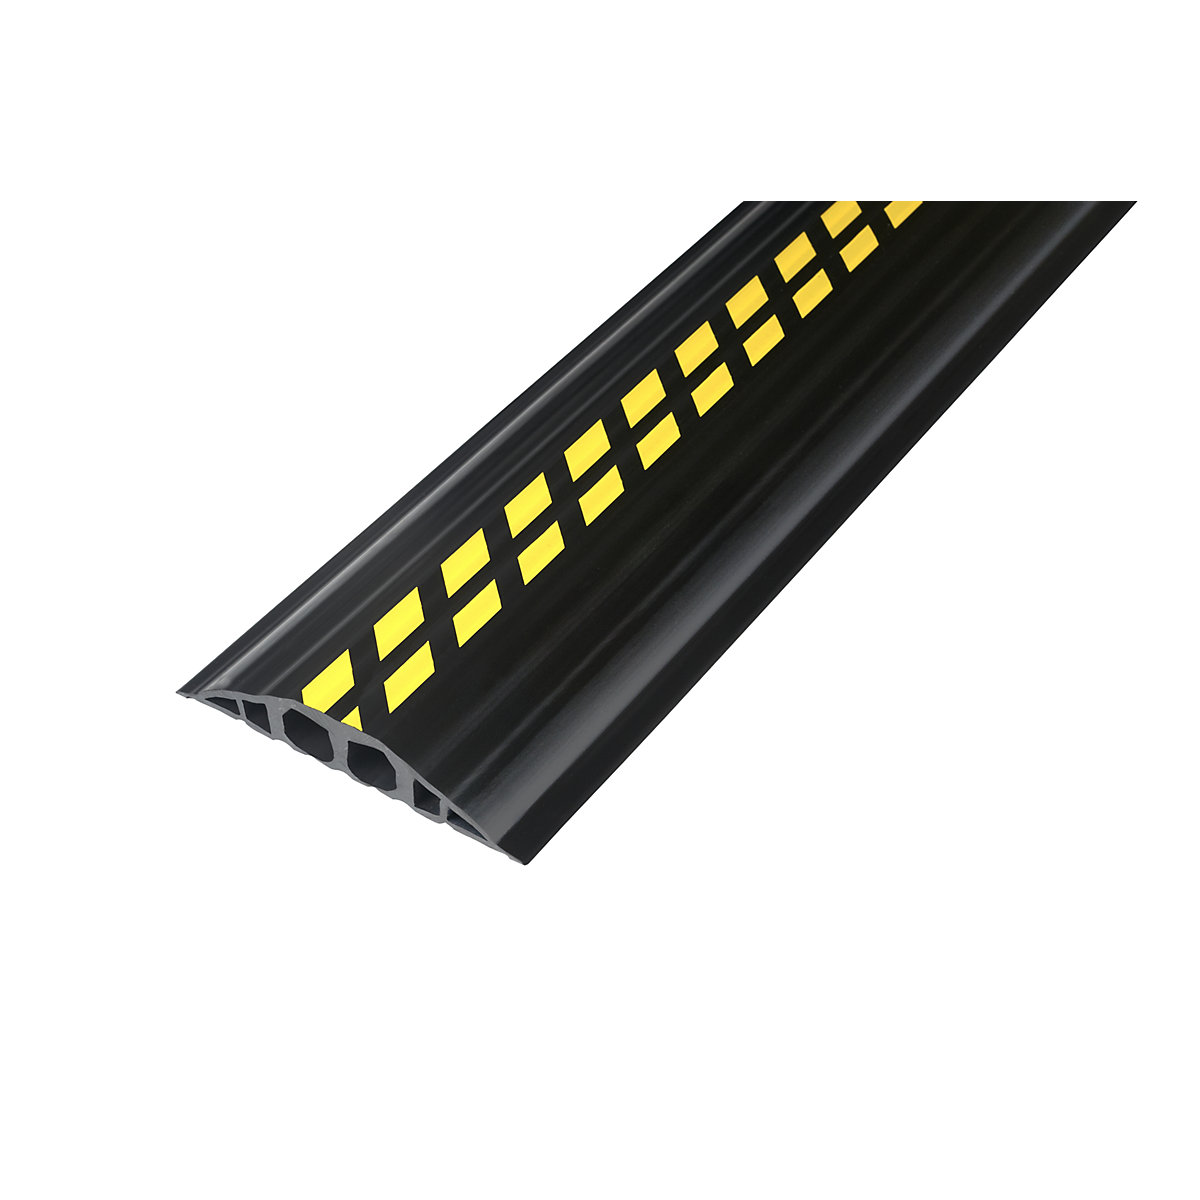 Canal para cable de PVC, L x A x H 1500 x 200 x 35 mm, negro / amarillo